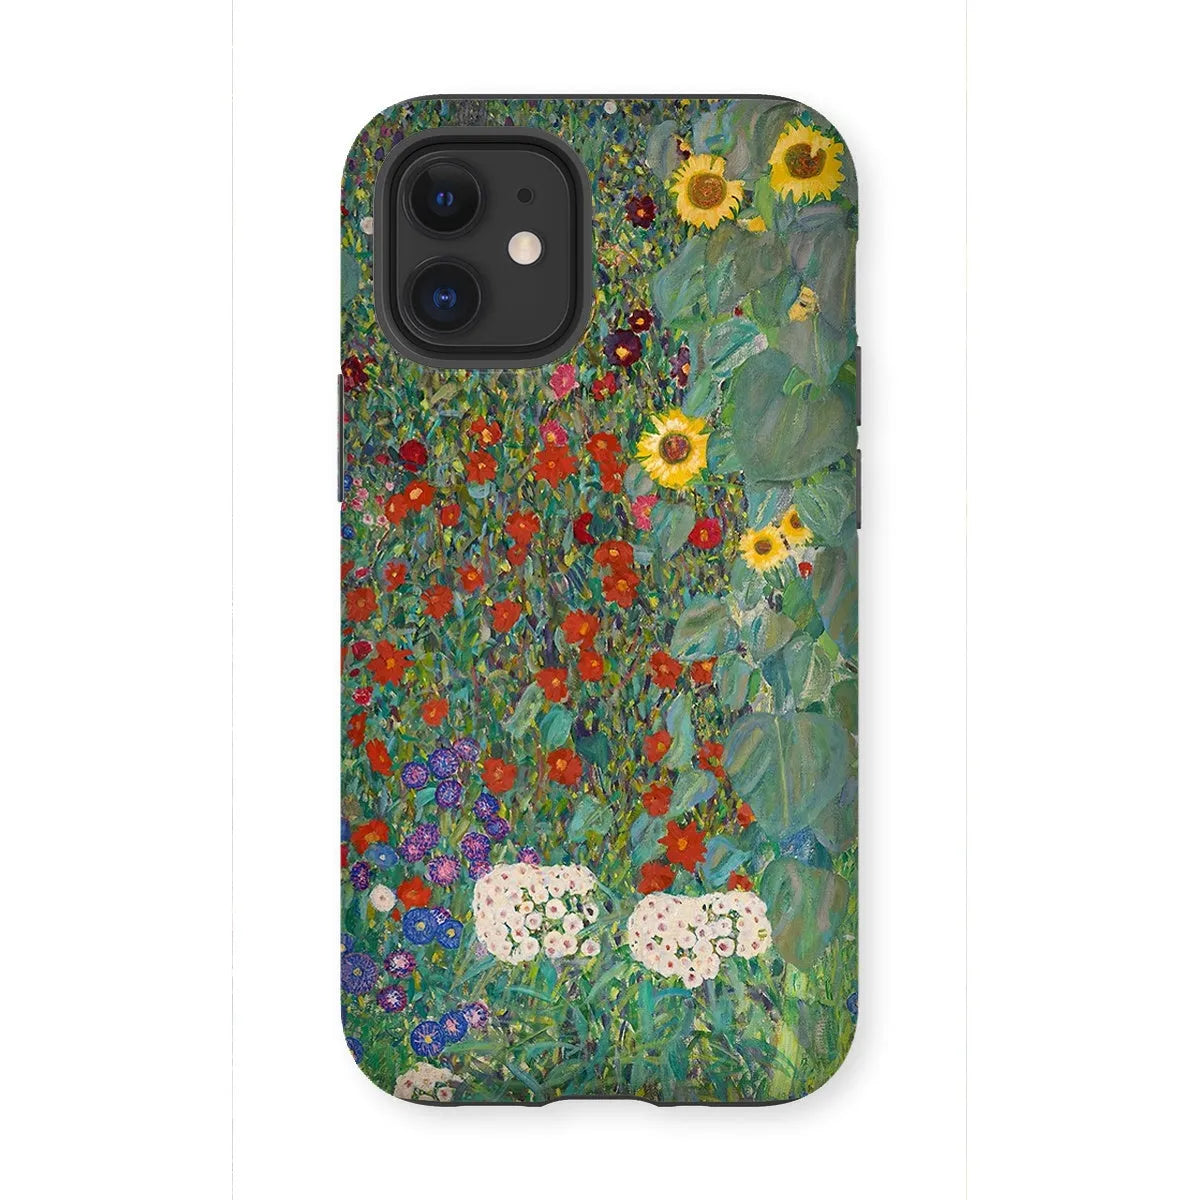 Farm Garden With Sunflowers Art Phone Case - Gustav Klimt - Iphone 12 Mini / Matte - Mobile Phone Cases - Aesthetic Art